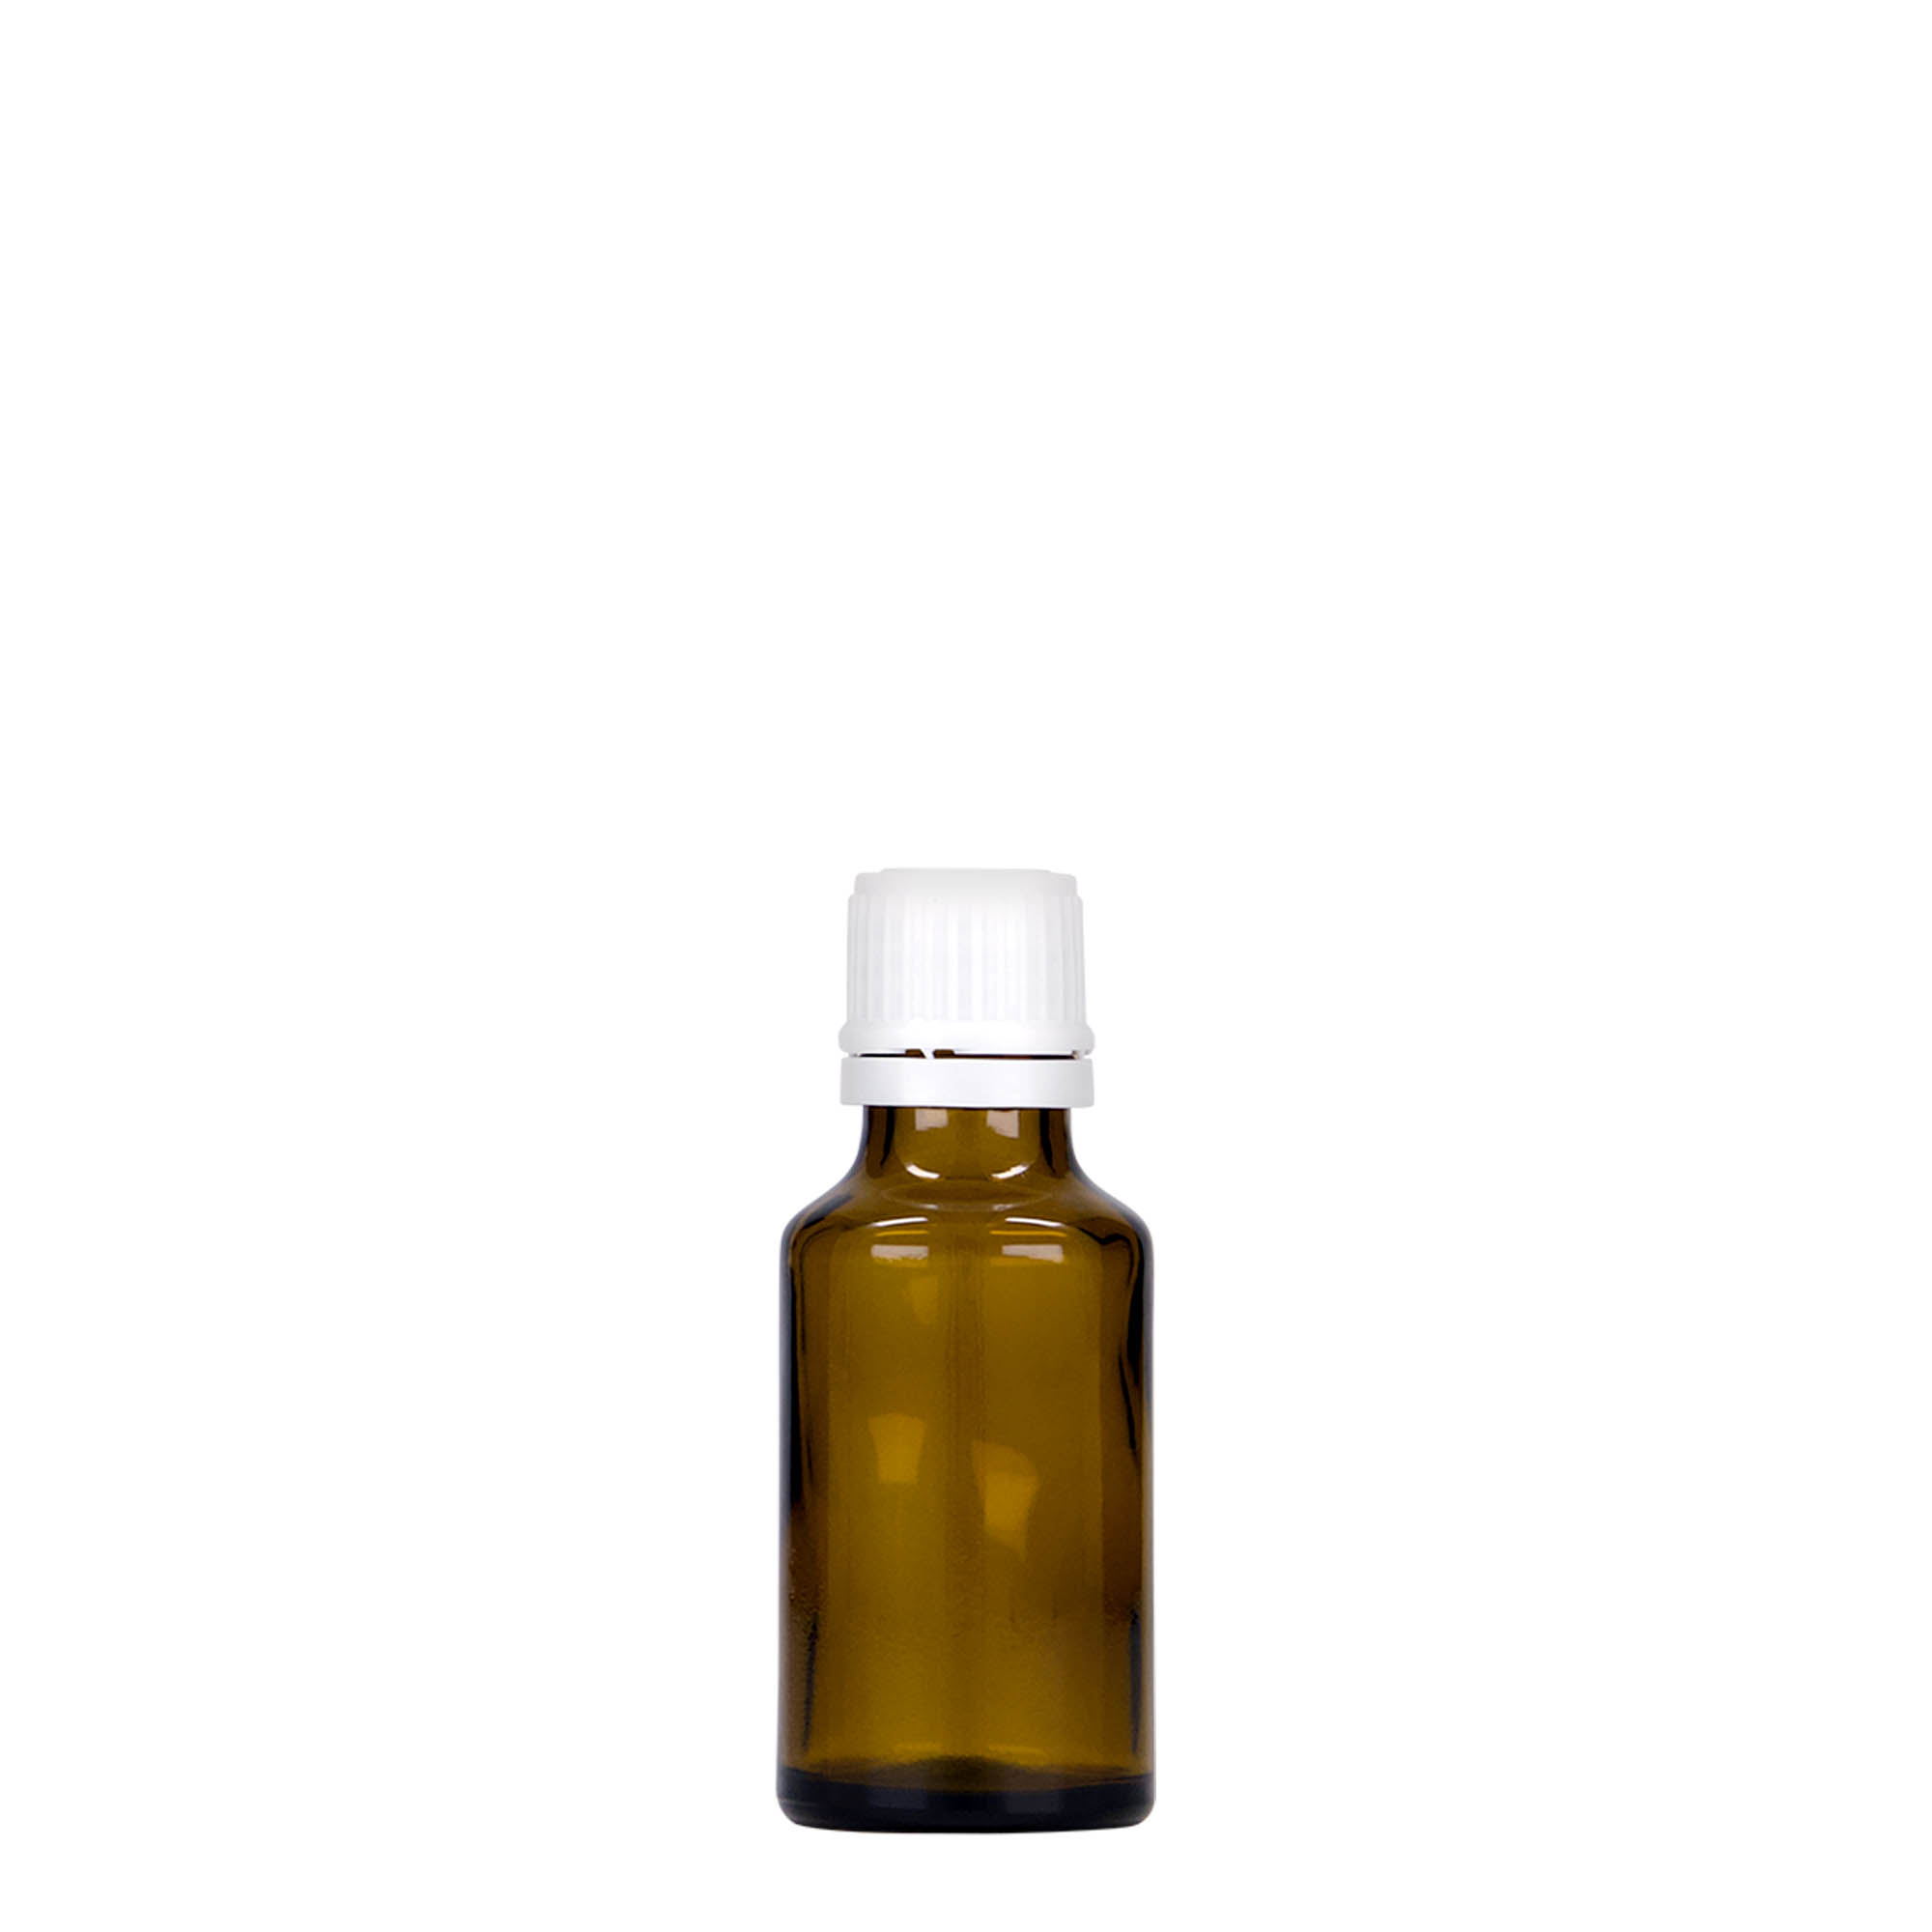 25 ml Medizinflasche, Glas, braun, Mündung: DIN 18